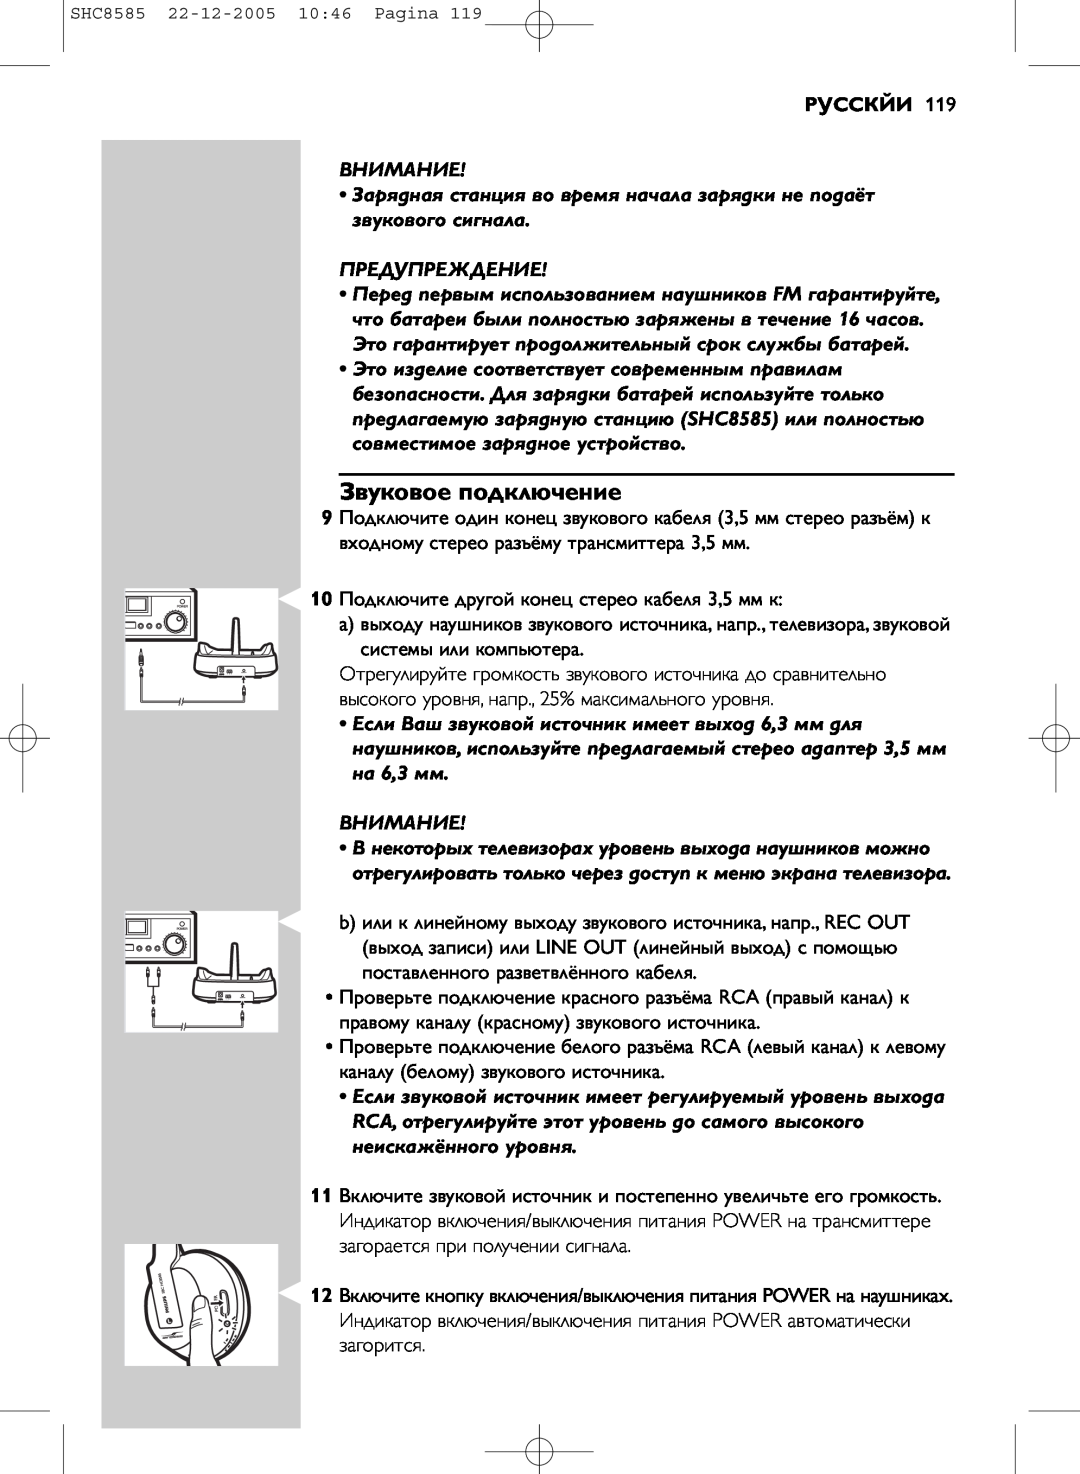 Philips SHC8585/05 manual Звуковое подключение, Русскйи 